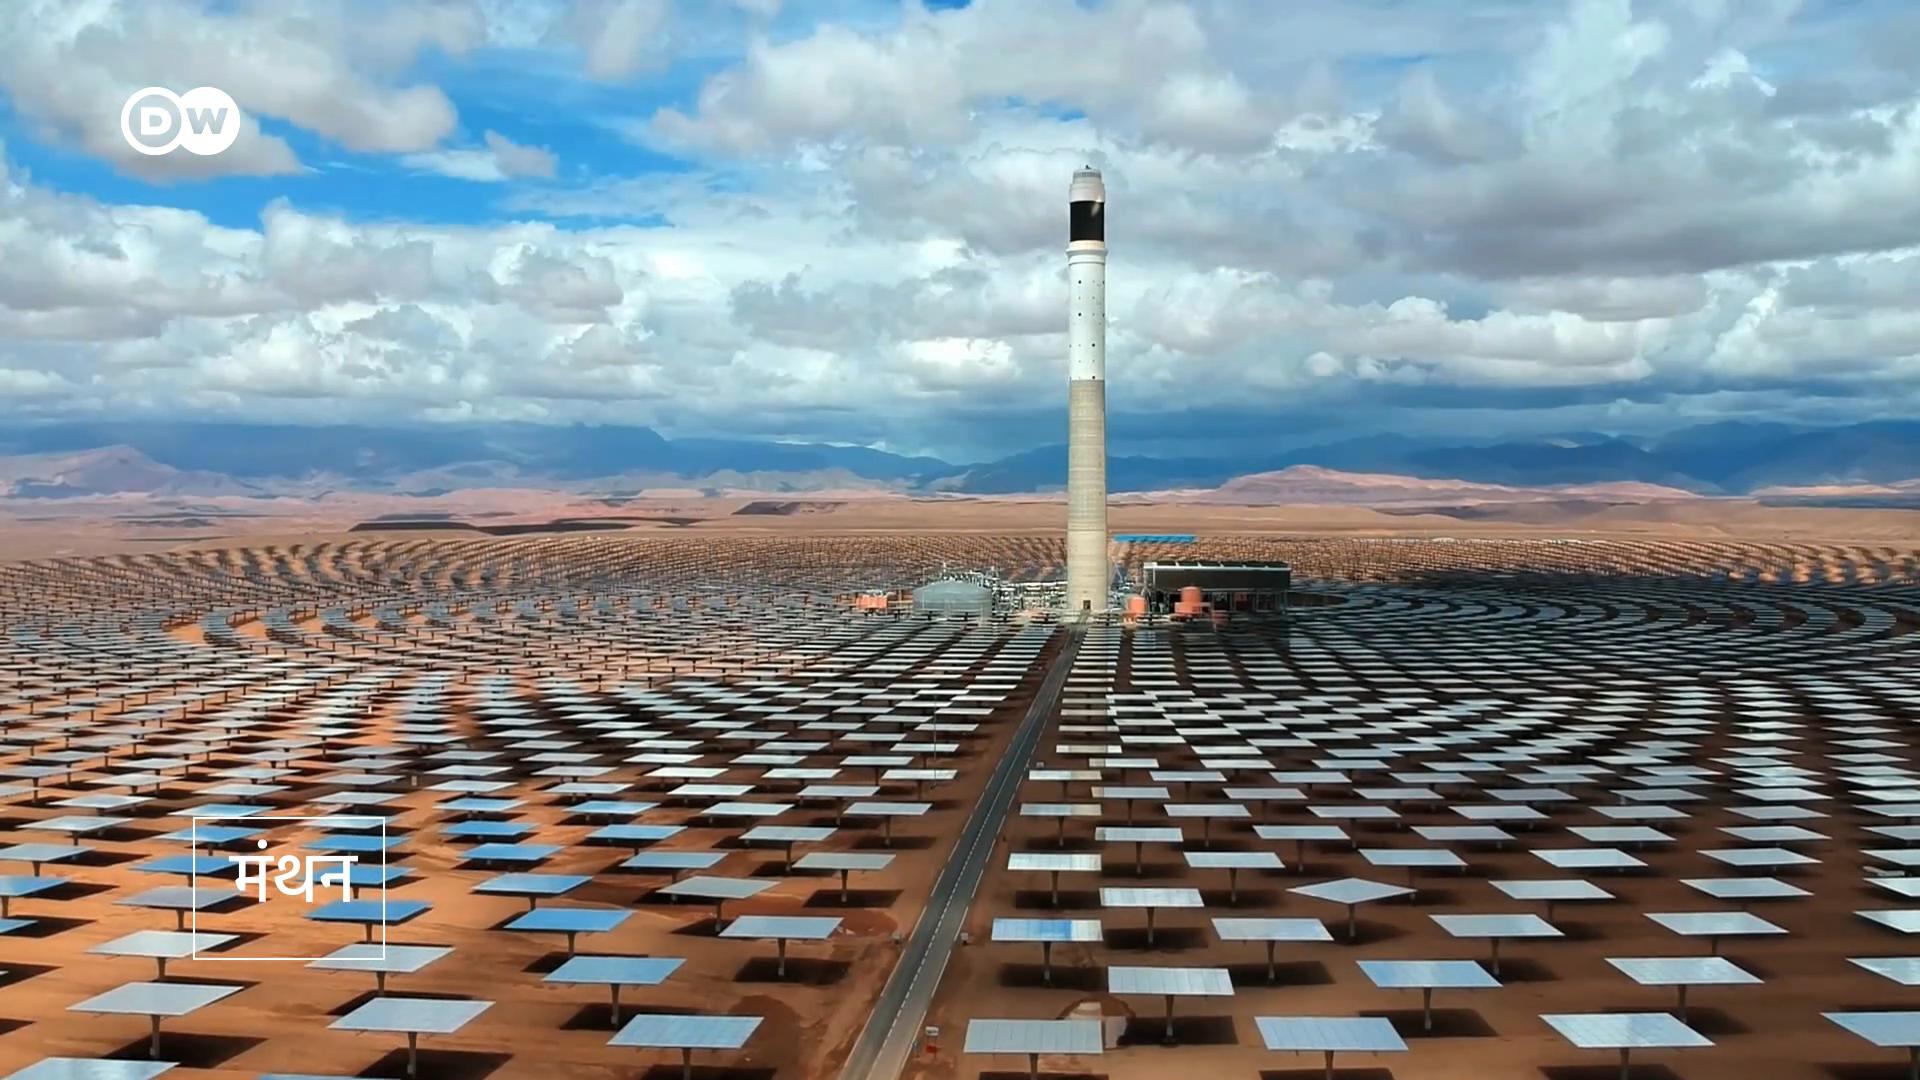 मौरितानिया रेगिस्तान में सौर ऊर्जा उत्पादन पर दांव लगा रहा है. देखिए, स्वच्छ ऊर्जा की दिशा में देश के कदम.